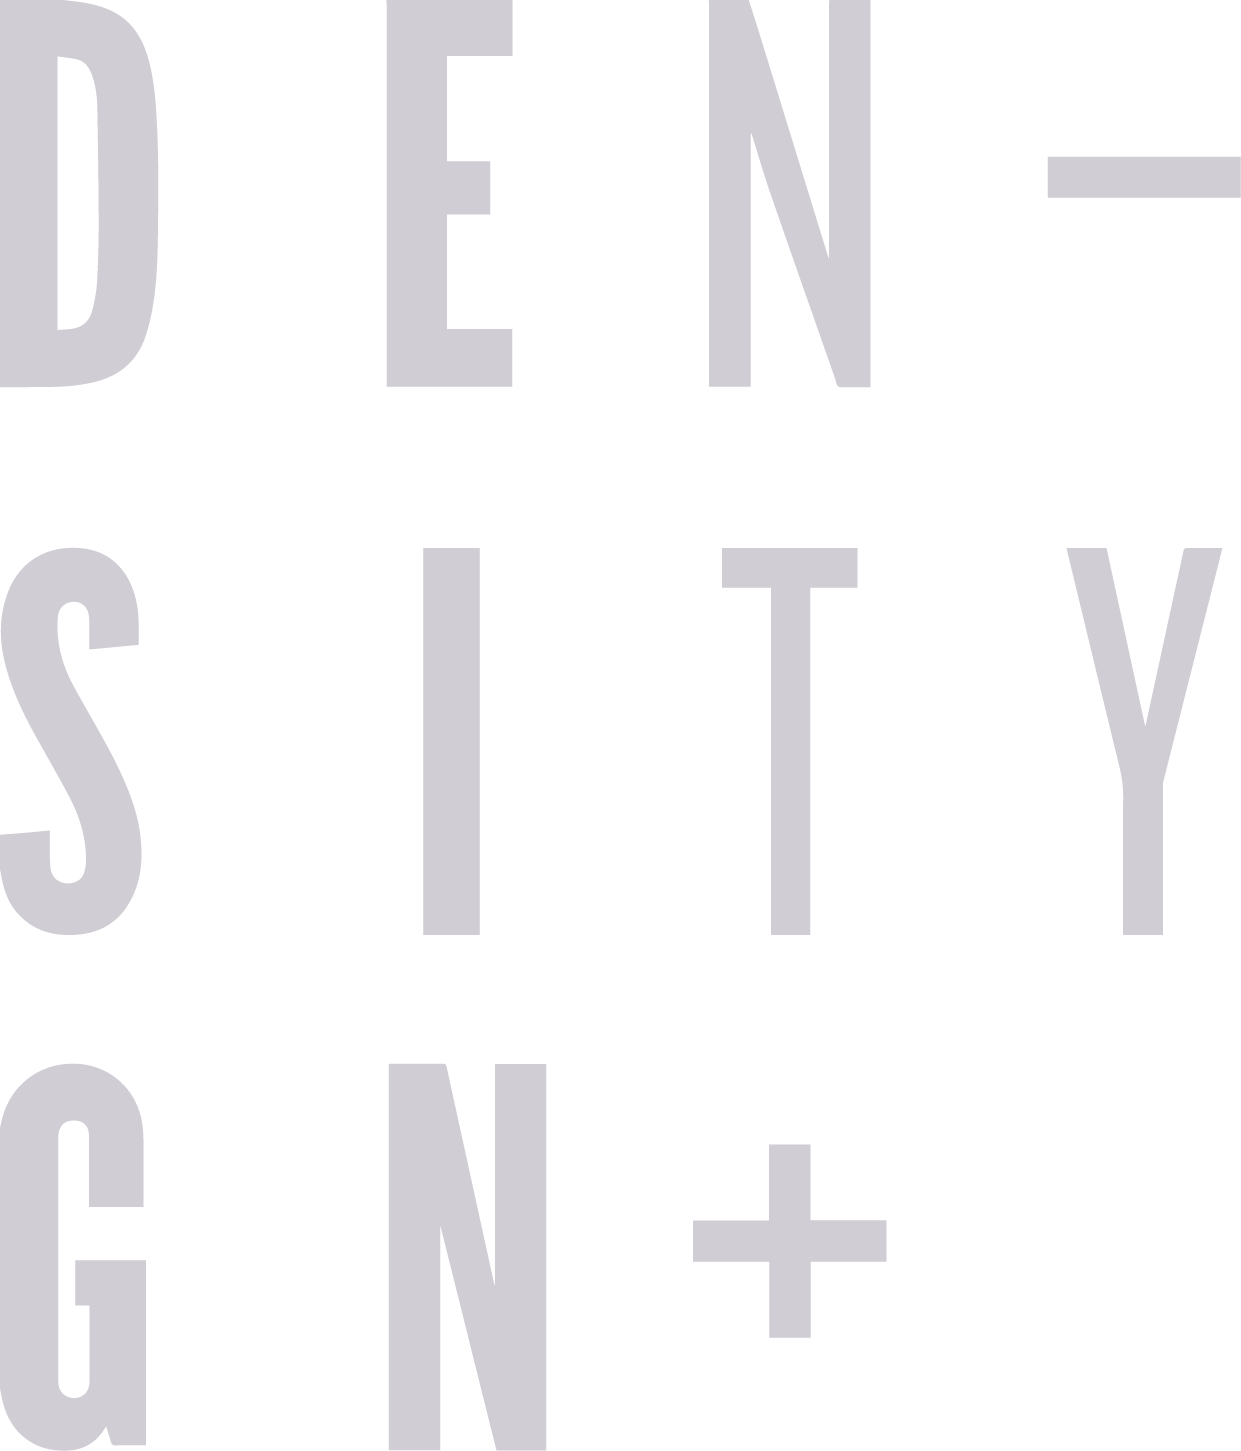 DensityDesign logo